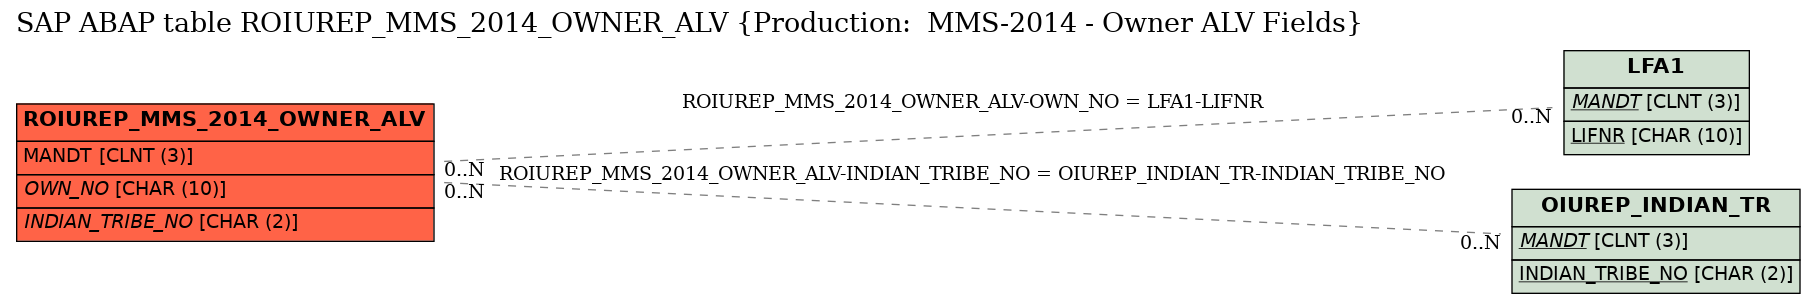 E-R Diagram for table ROIUREP_MMS_2014_OWNER_ALV (Production:  MMS-2014 - Owner ALV Fields)